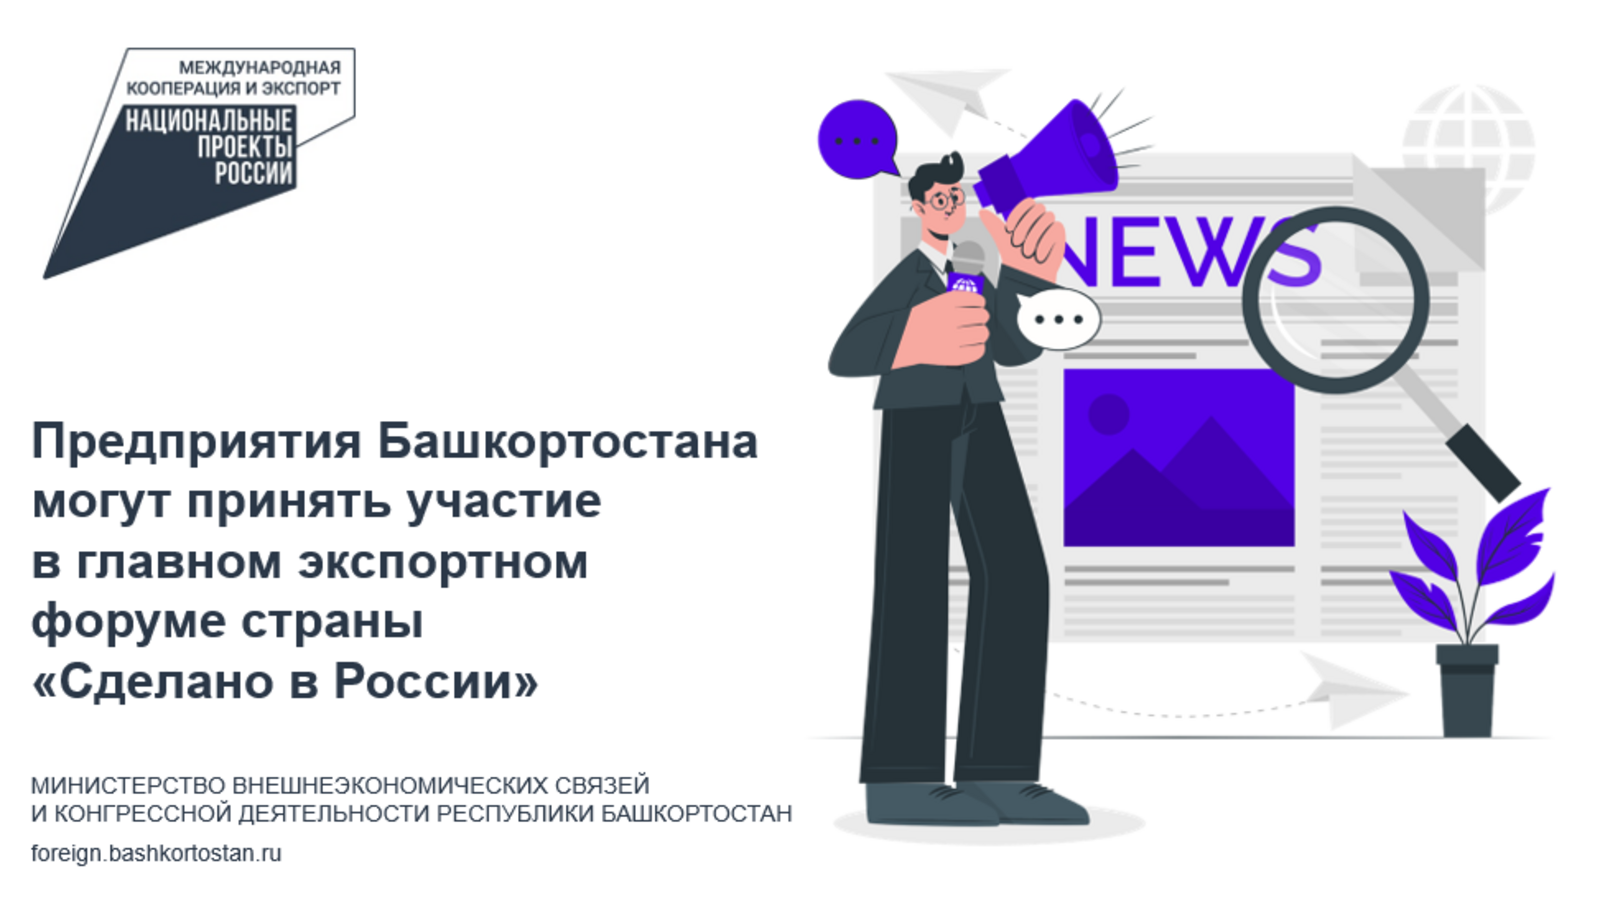 Предприятия Башкортостана могут принять участие в главном экспортном форуме страны «Сделано в России»